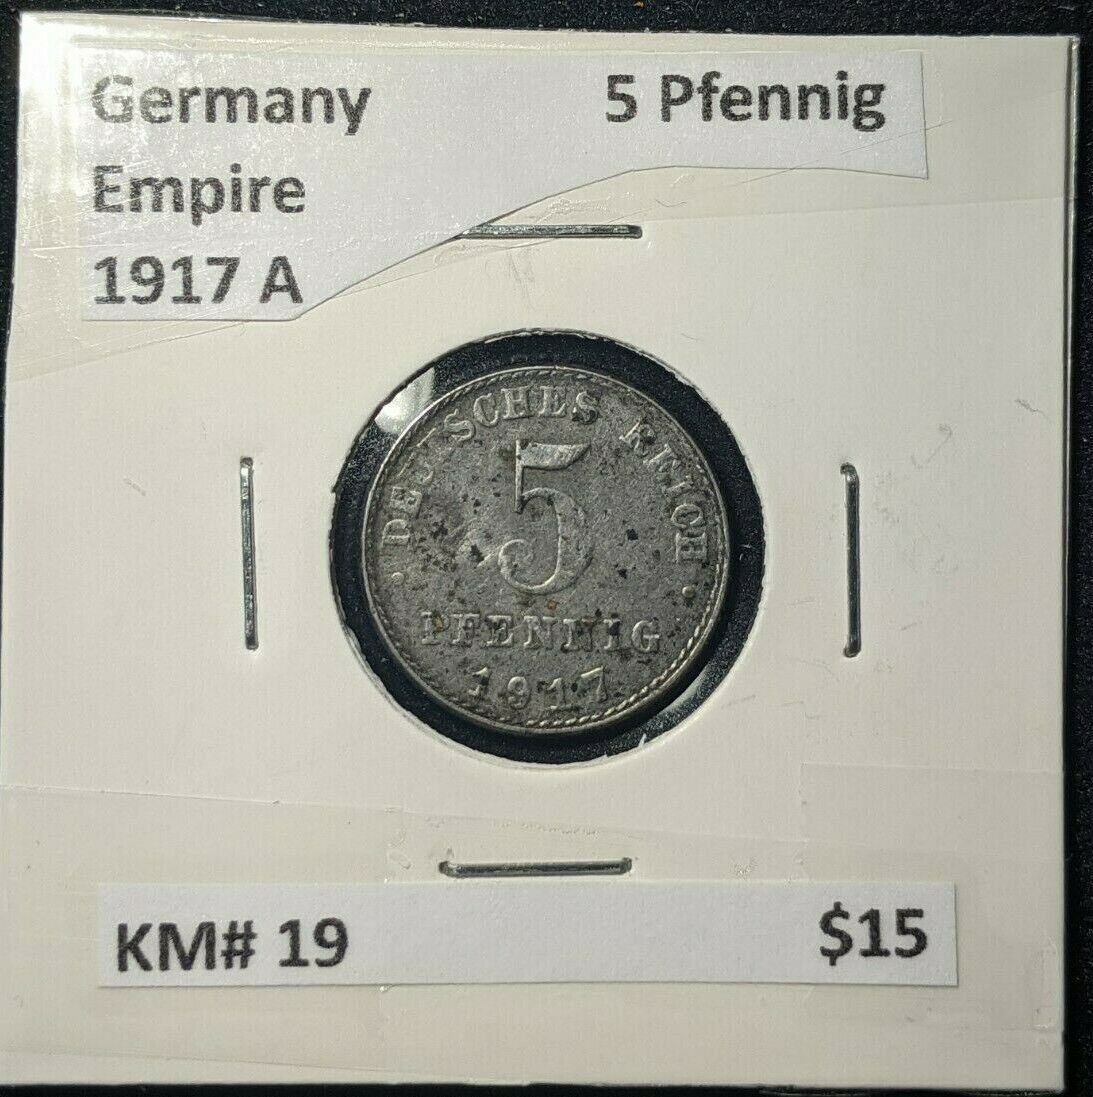 Germany Empire 1917 A 5 Pfennig KM# 19  #868  7A